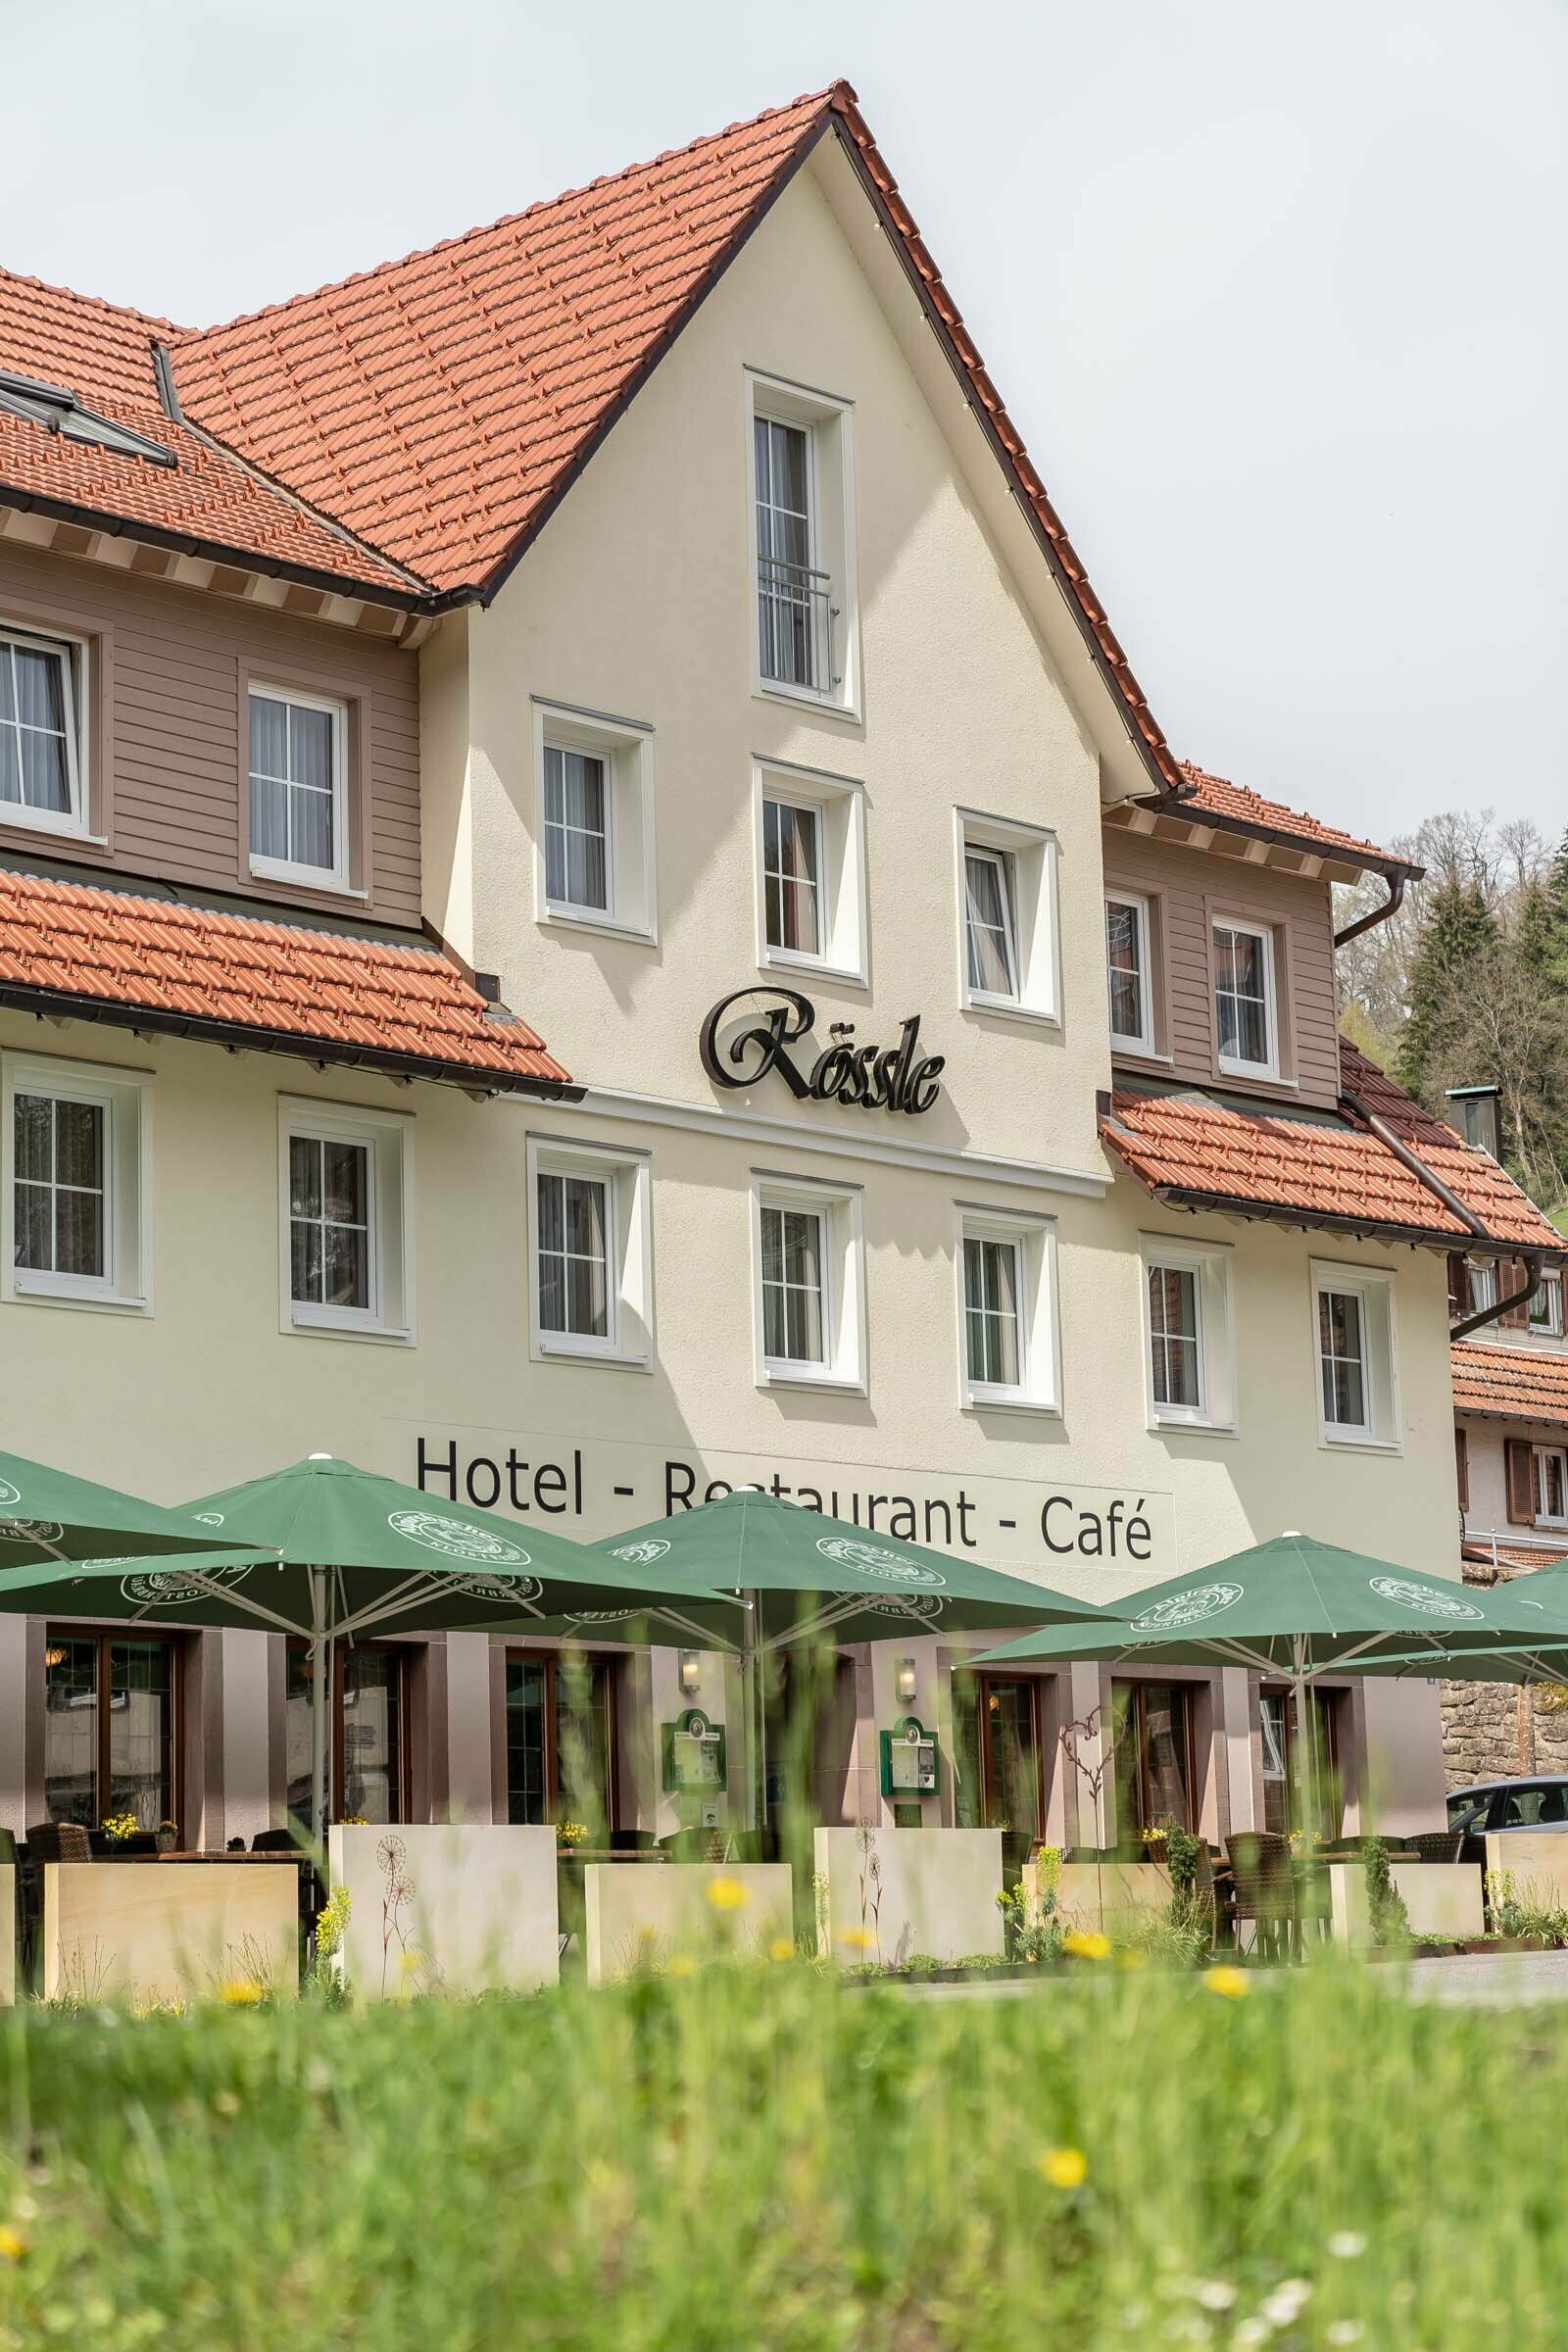 4 Tage Auszeit im Schwarzwald inkl. Aqua-Thermo-Jet Massage – Hotel Rössle Berneck  in Altensteig, Baden-Württemberg inkl. Halbpension